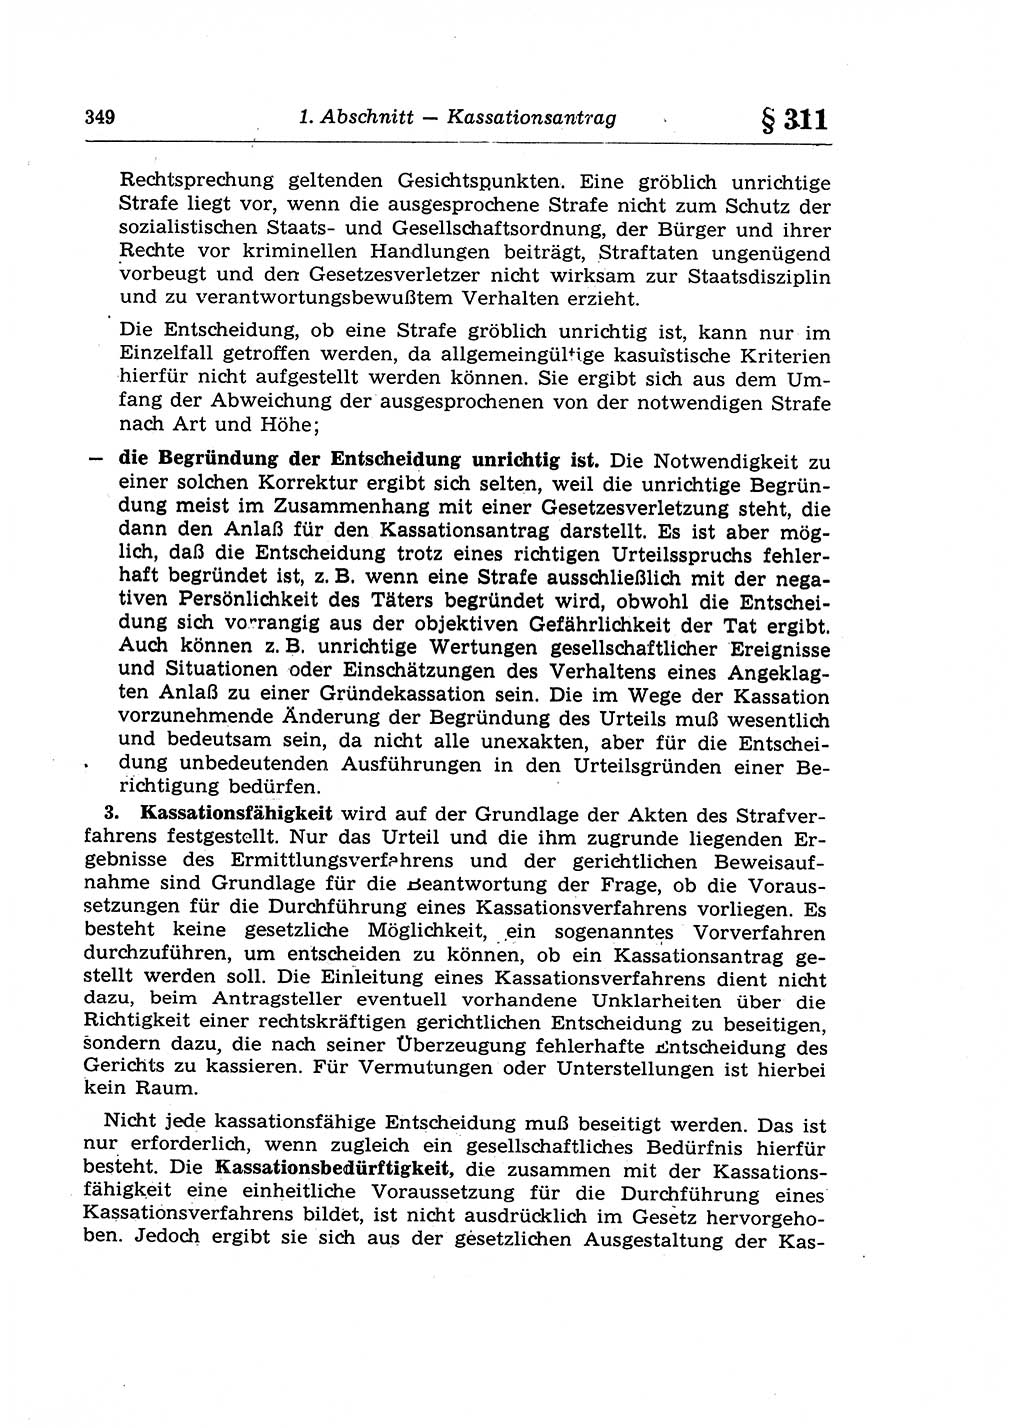 Strafprozeßrecht der DDR (Deutsche Demokratische Republik), Lehrkommentar zur Strafprozeßordnung (StPO) 1968, Seite 349 (Strafprozeßr. DDR Lehrkomm. StPO 19688, S. 349)